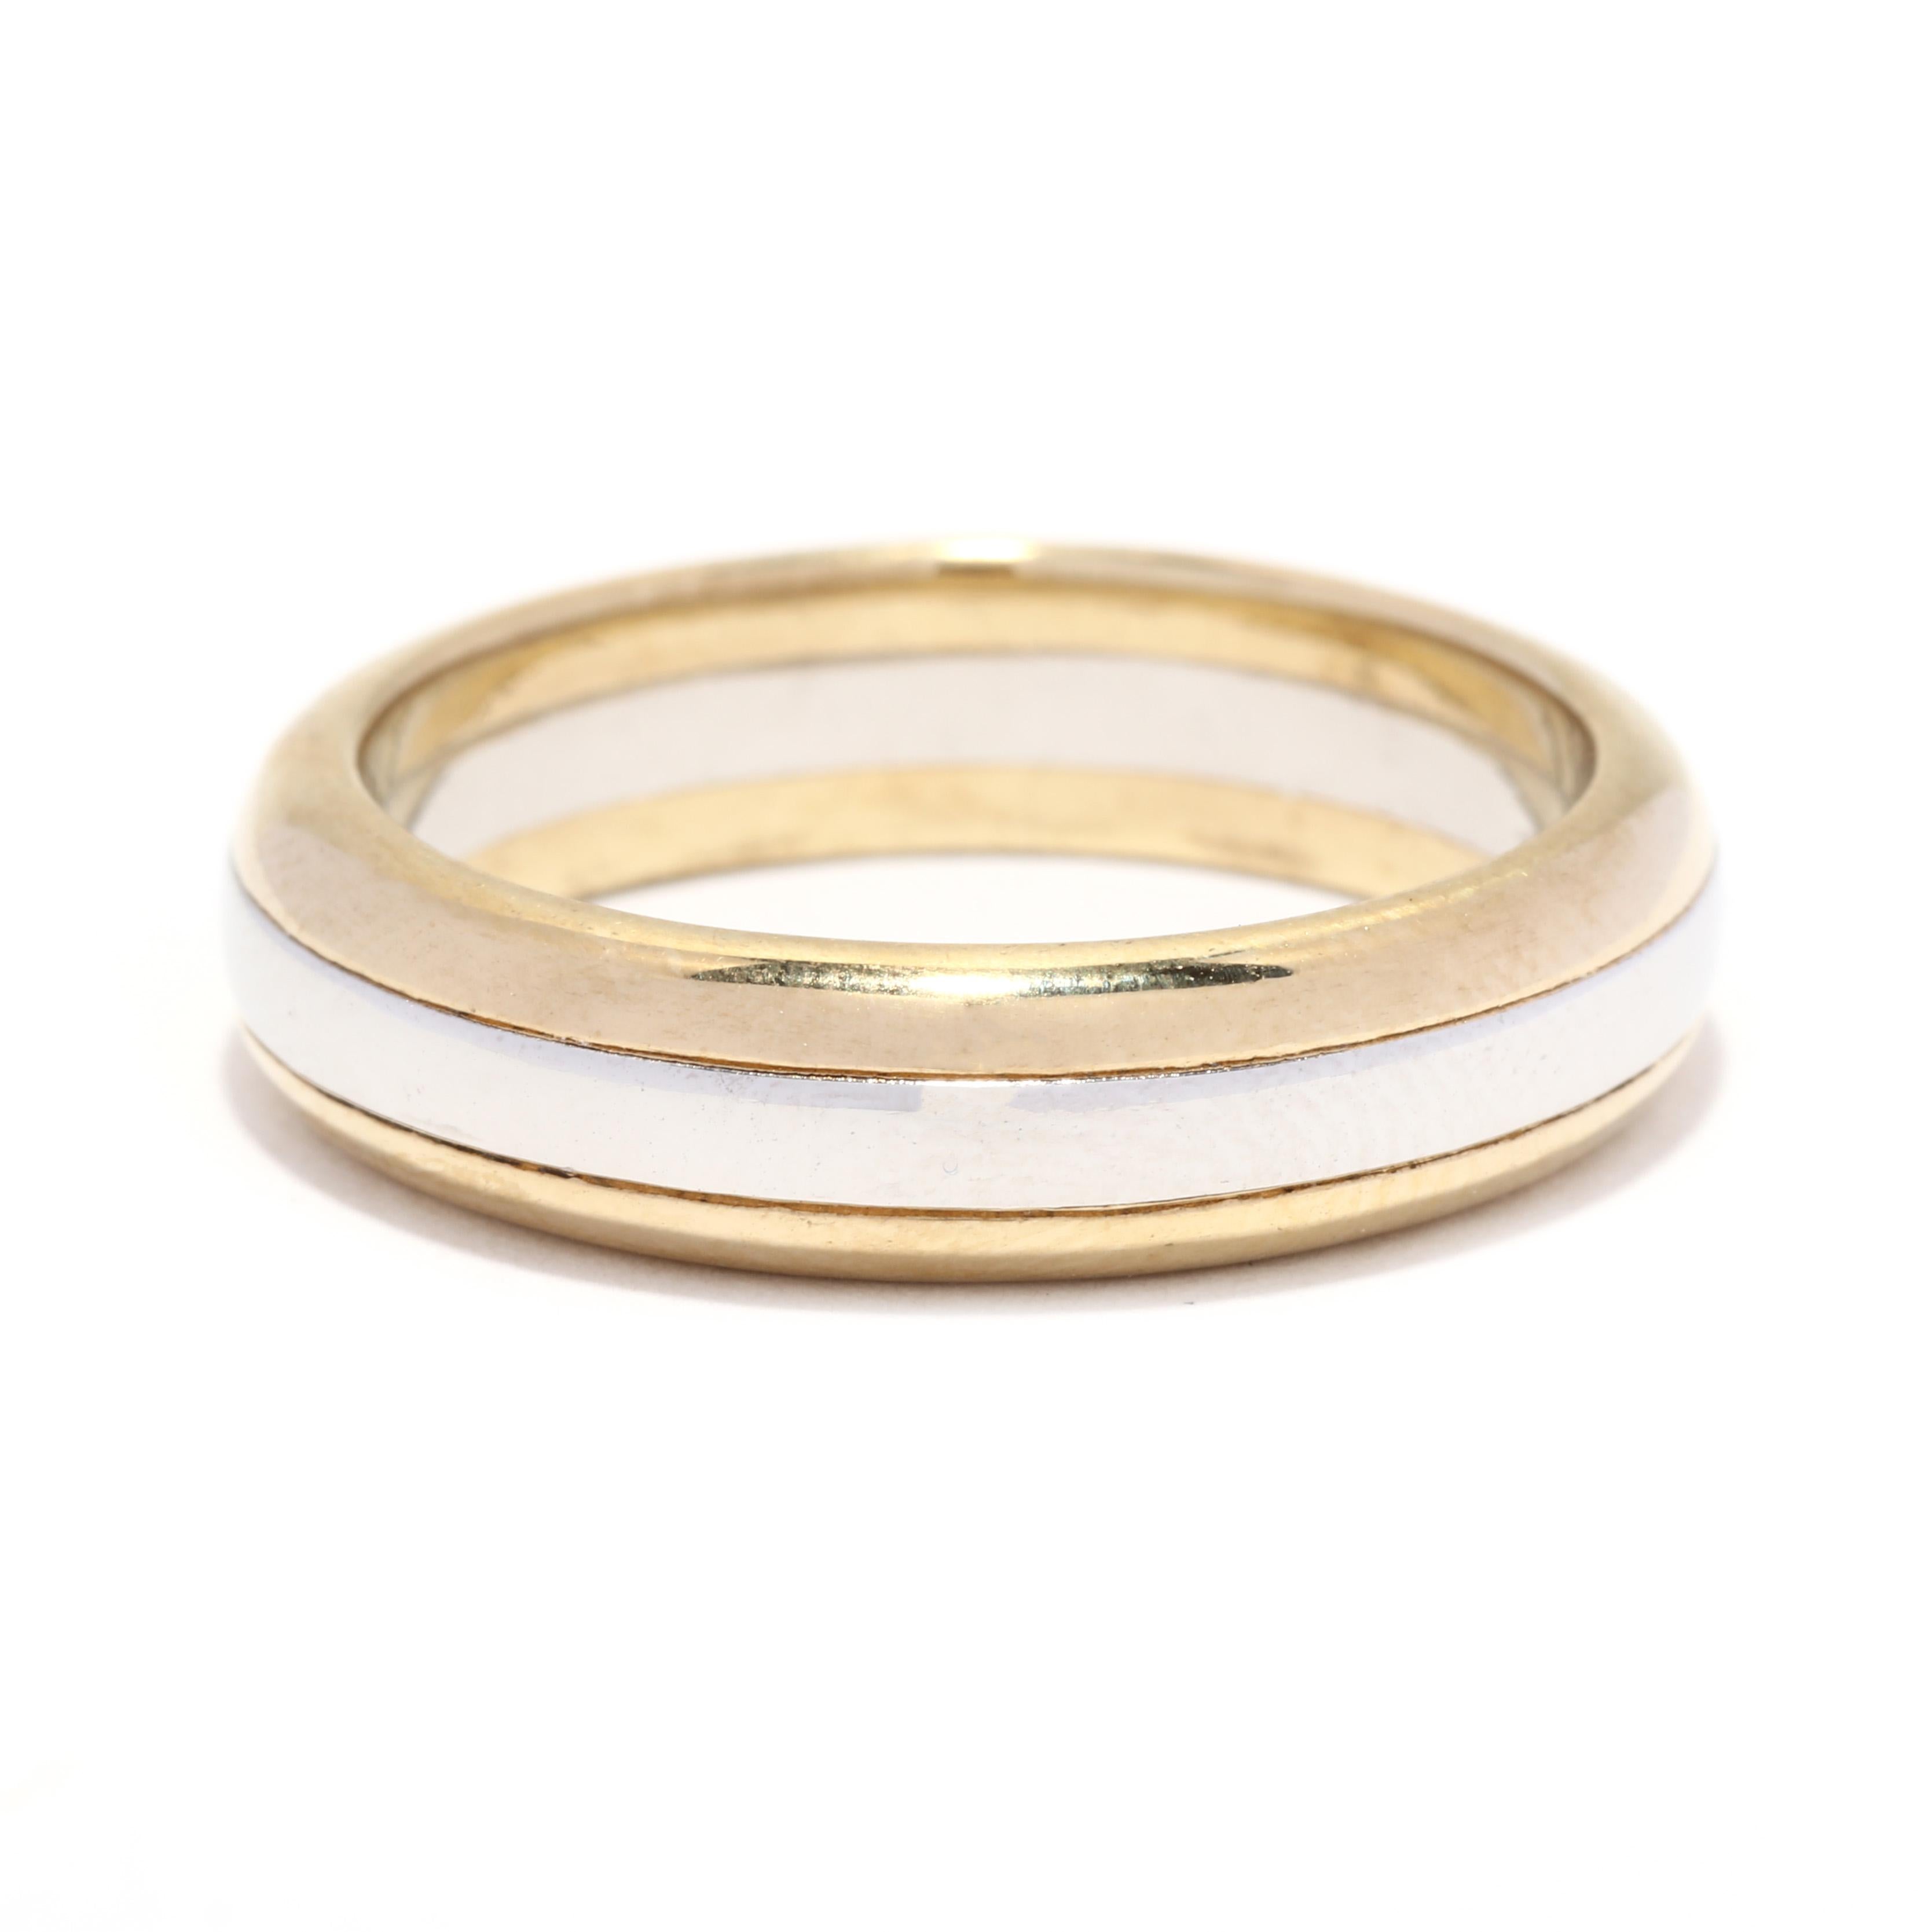 Une alliance vintage en platine et or jaune 14 carats à deux tons. Ce bracelet empilable présente une bande de platine poli uni avec des bords en or jaune.

Taille de l'anneau : 8.75

Hauteur du doigt : 2.5 mm

Largeur : 5,25 mm

Poids : 7.8 dwts. /